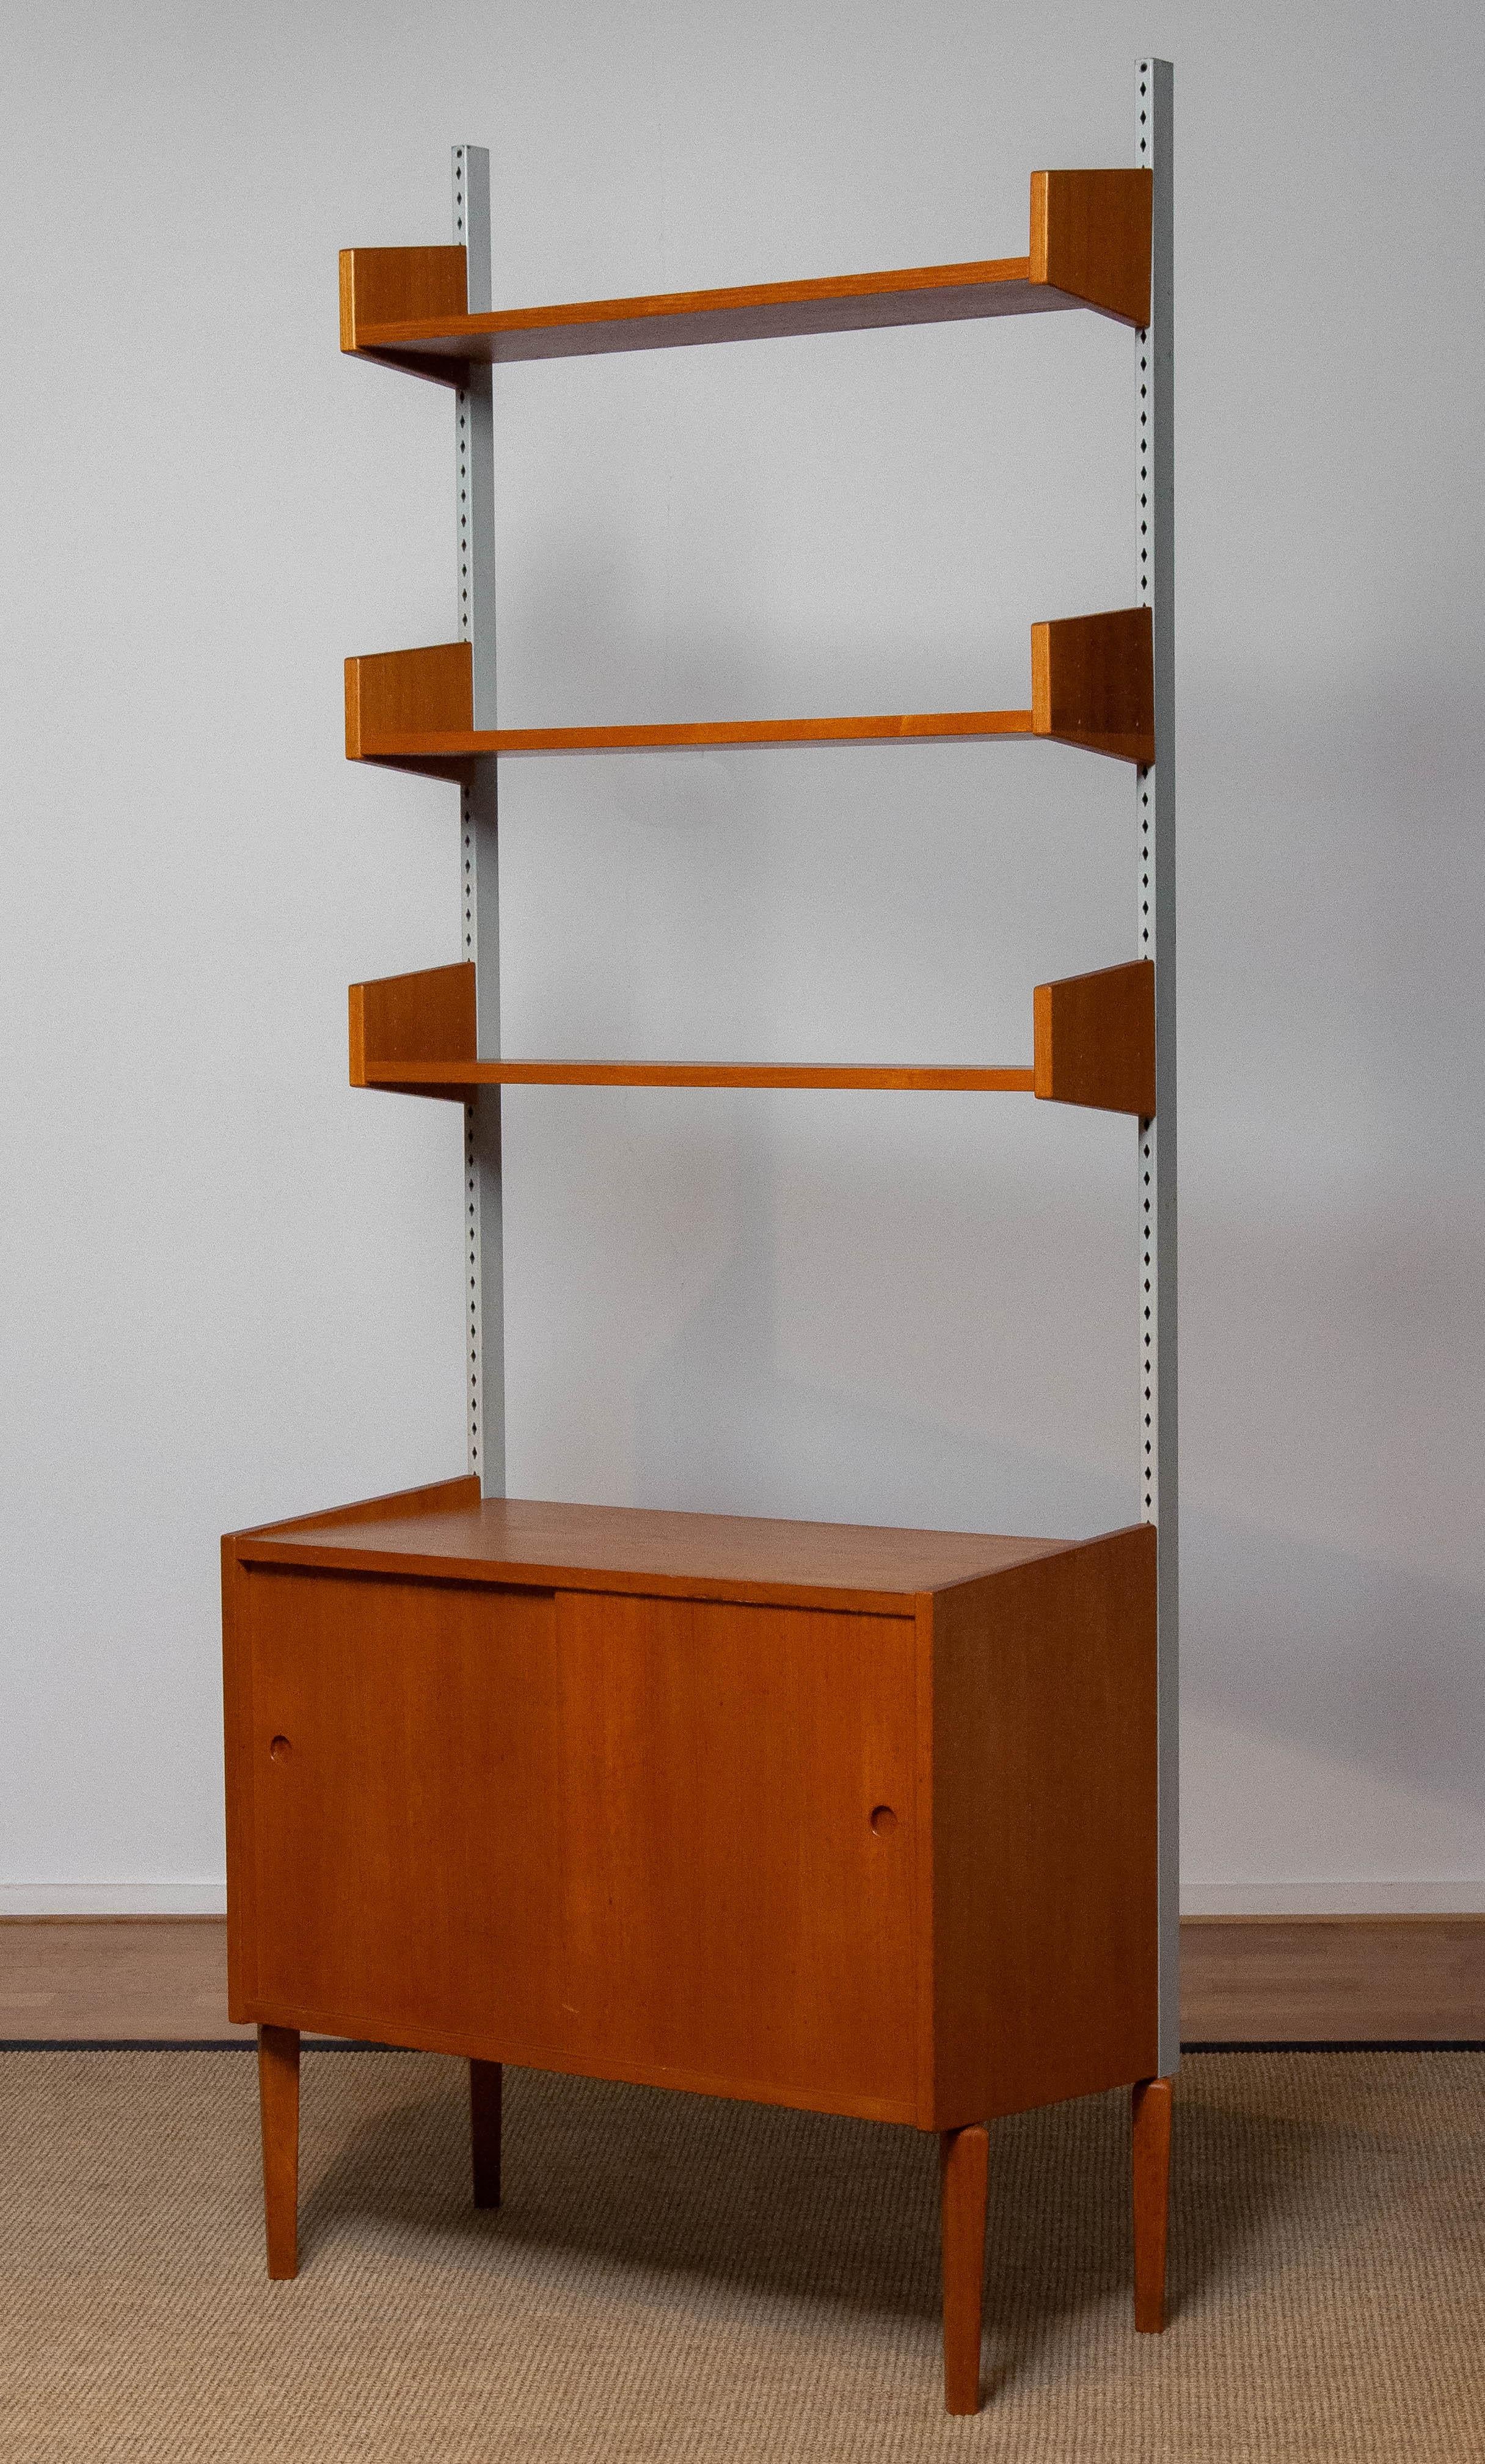 Magnifique et extrêmement rare système d'étagères modulair conçu par Harald Lundqvist pour Lizzy Element Möbel Suède dans les années 1950. Les trois étagères sont réglables en hauteur. L'armoire est dotée de deux portes coulissantes et d'une étagère